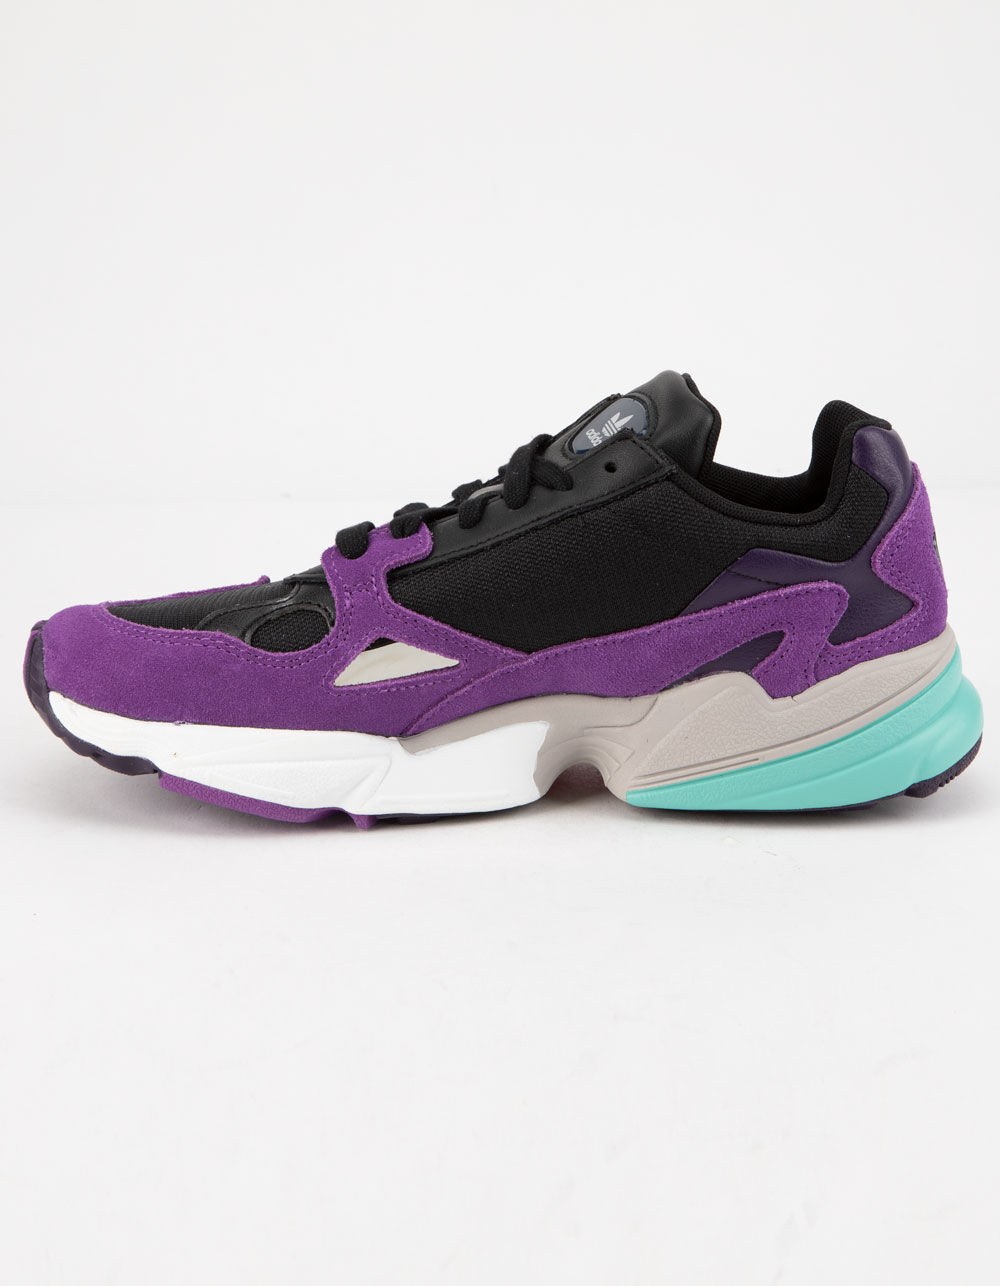 ADIDAS Falcon Core Black & Purple Womens Shoes - CORE BLACK/ACTIVE PURPLE | Tillys